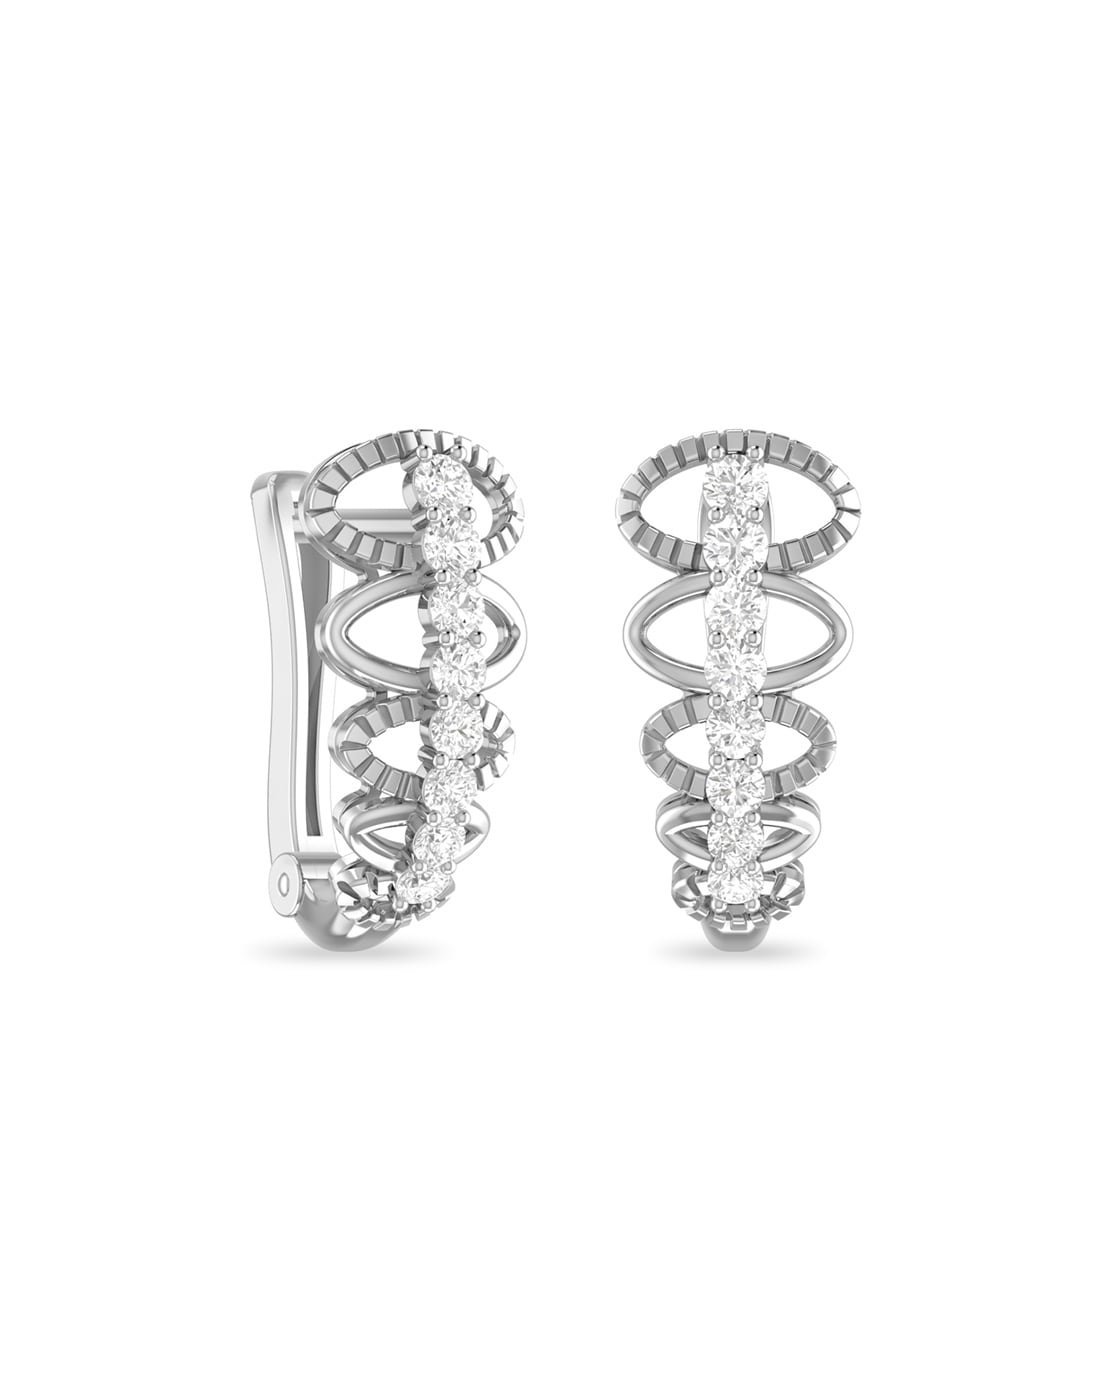 Buy diamond look silver bali earrings for women online Free shipping